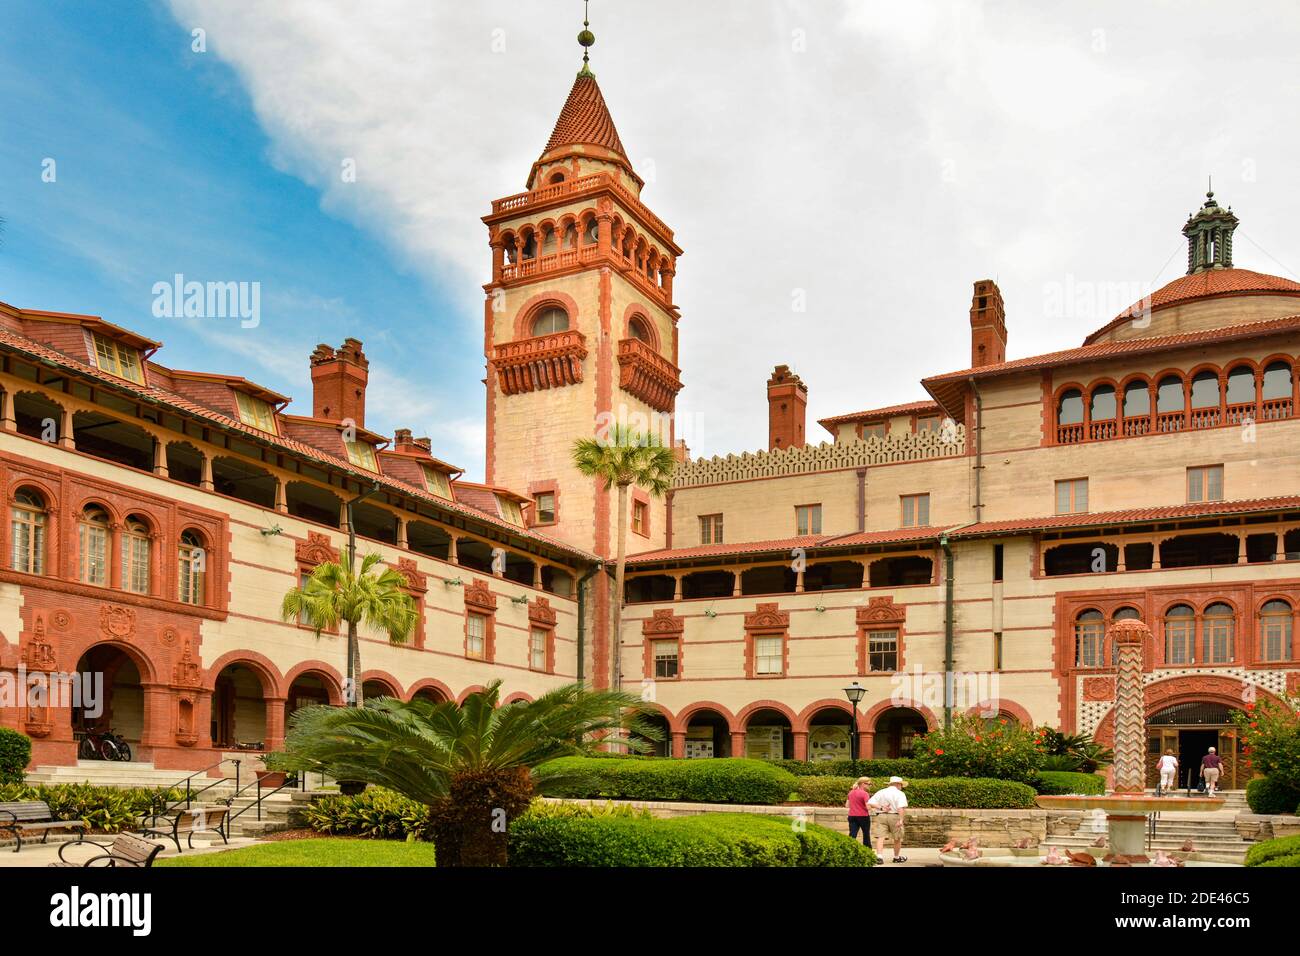 La magnifica architettura rinascimentale spagnola con elementi rinascimentali coloniali nell'originale Ponce de Leon Hotel, ora Flagler College, St. Augustin Foto Stock